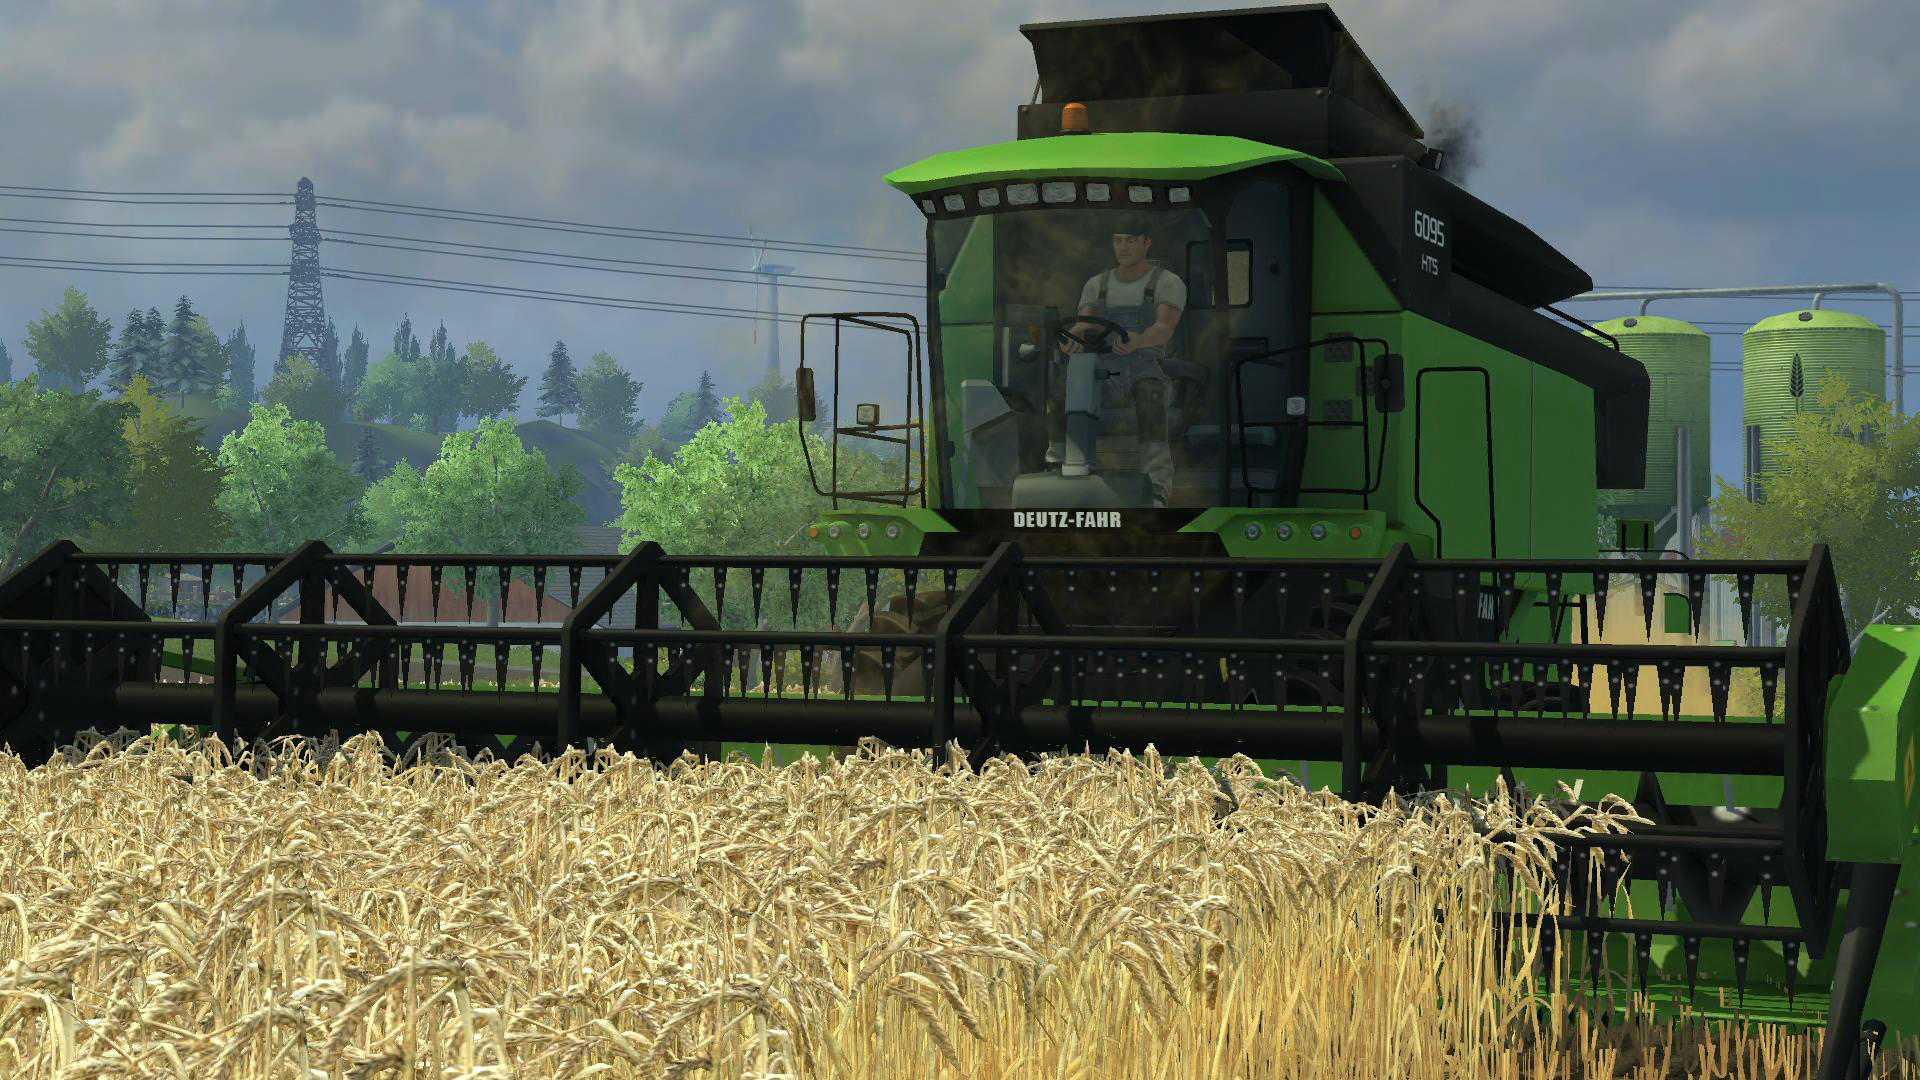 download farming simulator 2013 ps4